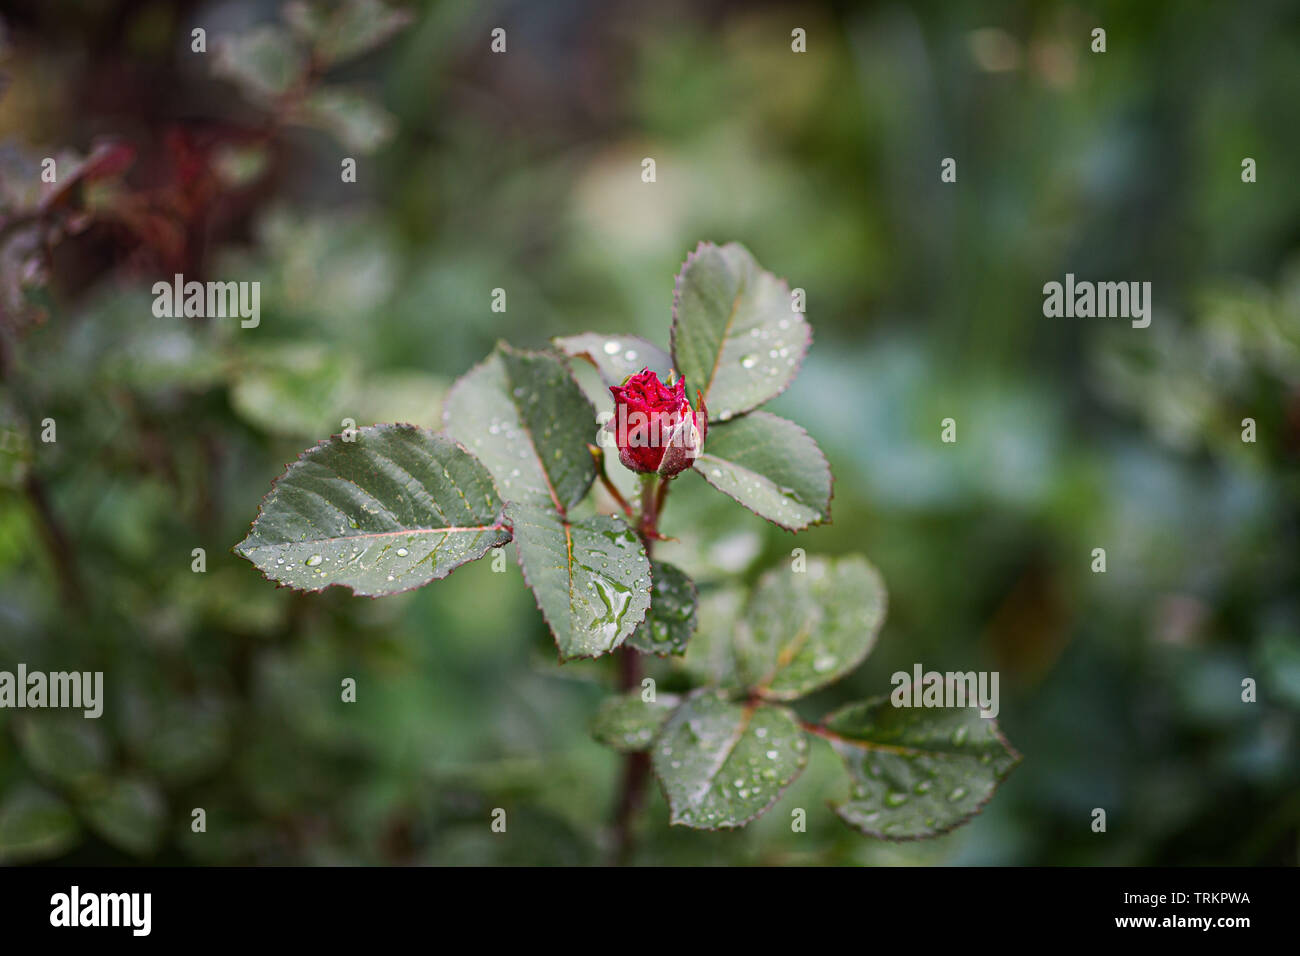 Nahaufnahme der ungeöffneten rote Rose Bud und grünen Blütenblätter mit Wassertropfen auf den Blättern Stockfoto